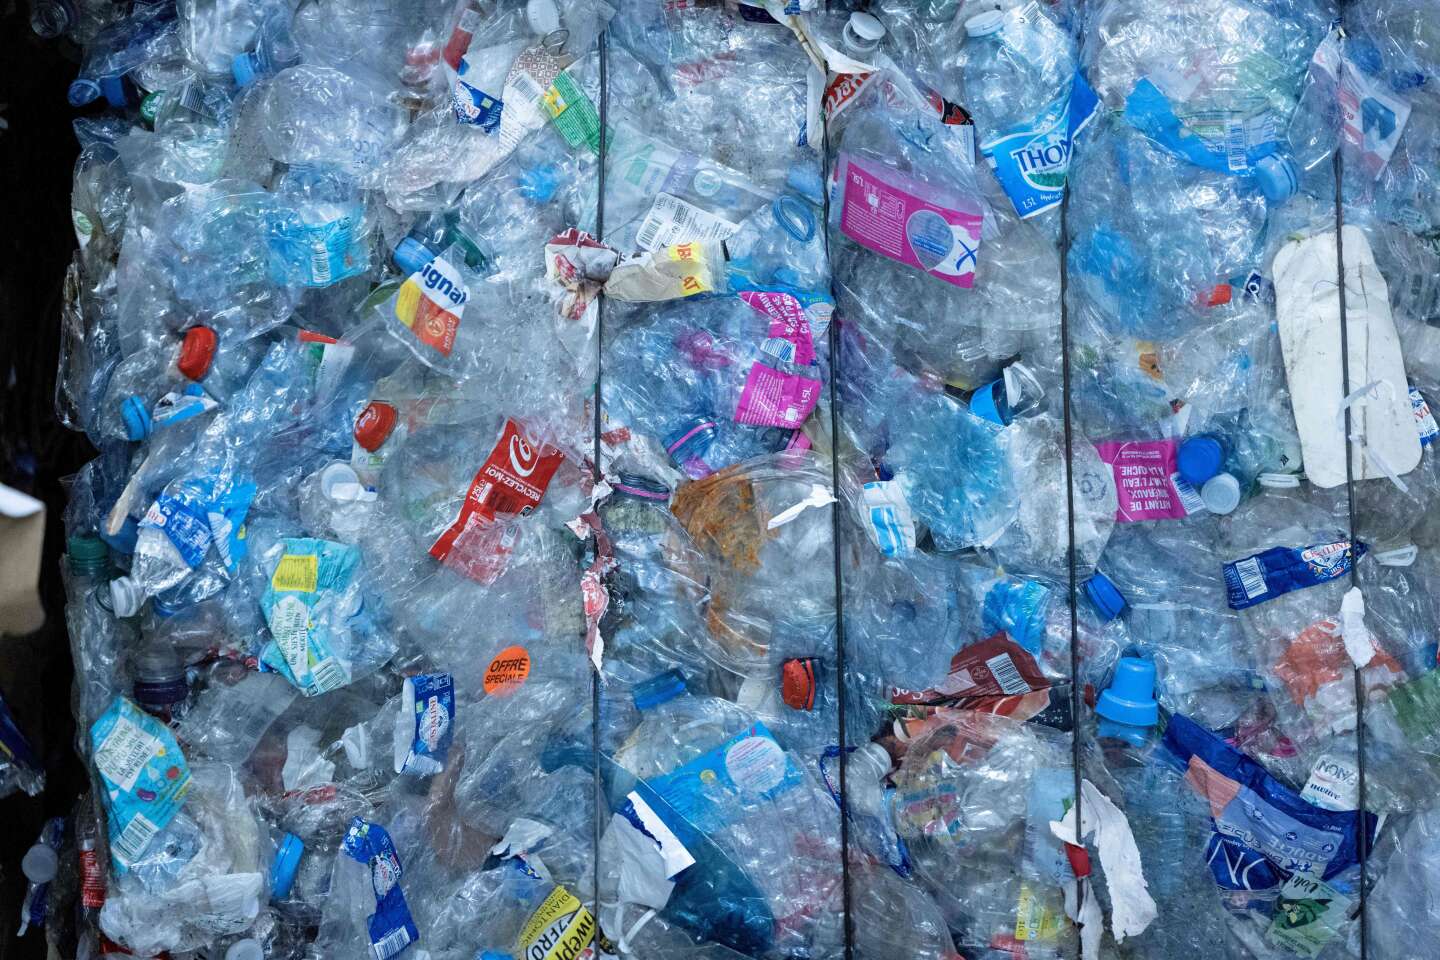 Le gouvernement ouvre une concertation sur le dispositif de consigne des bouteilles en plastique